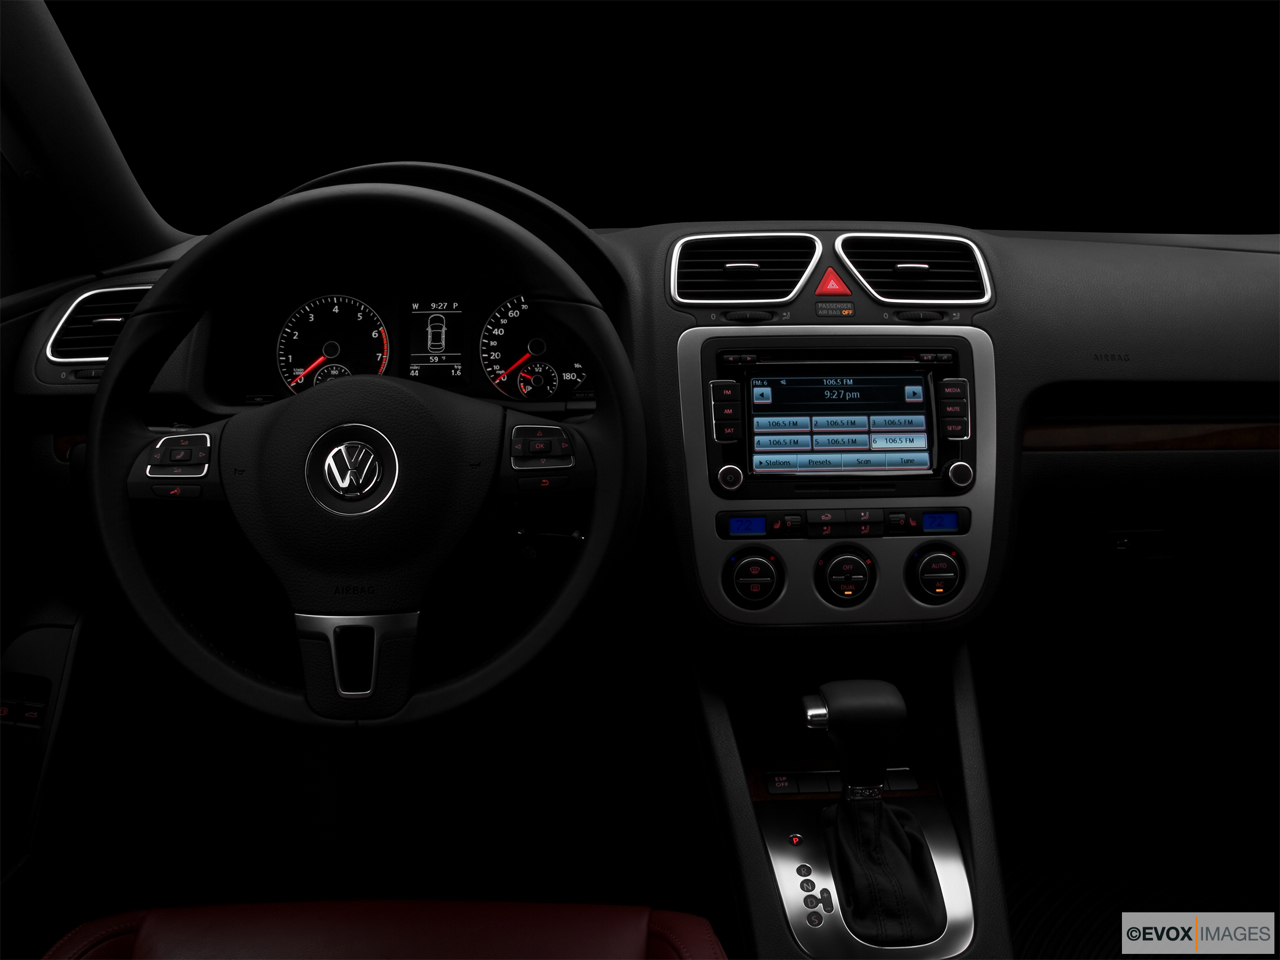 2010 Volkswagen Eos Lux Centered wide dash shot - "night" shot. 